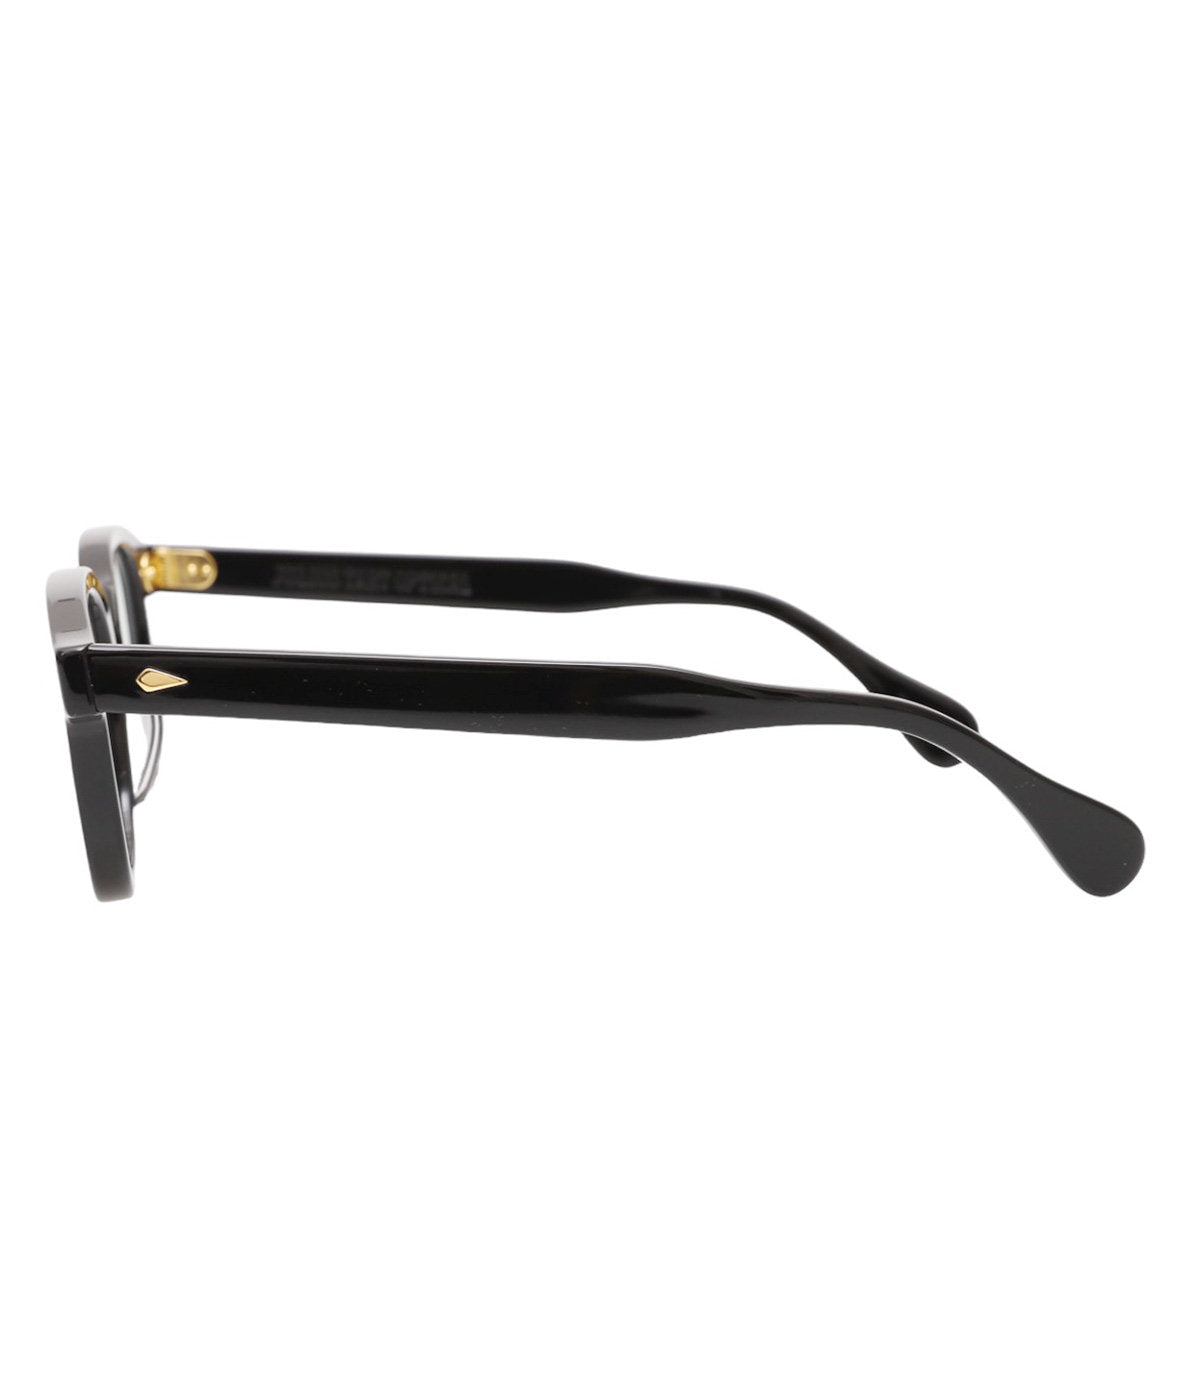 JULIUS TART OPTICAL AR Gold Edition Eyeglass Frame Black